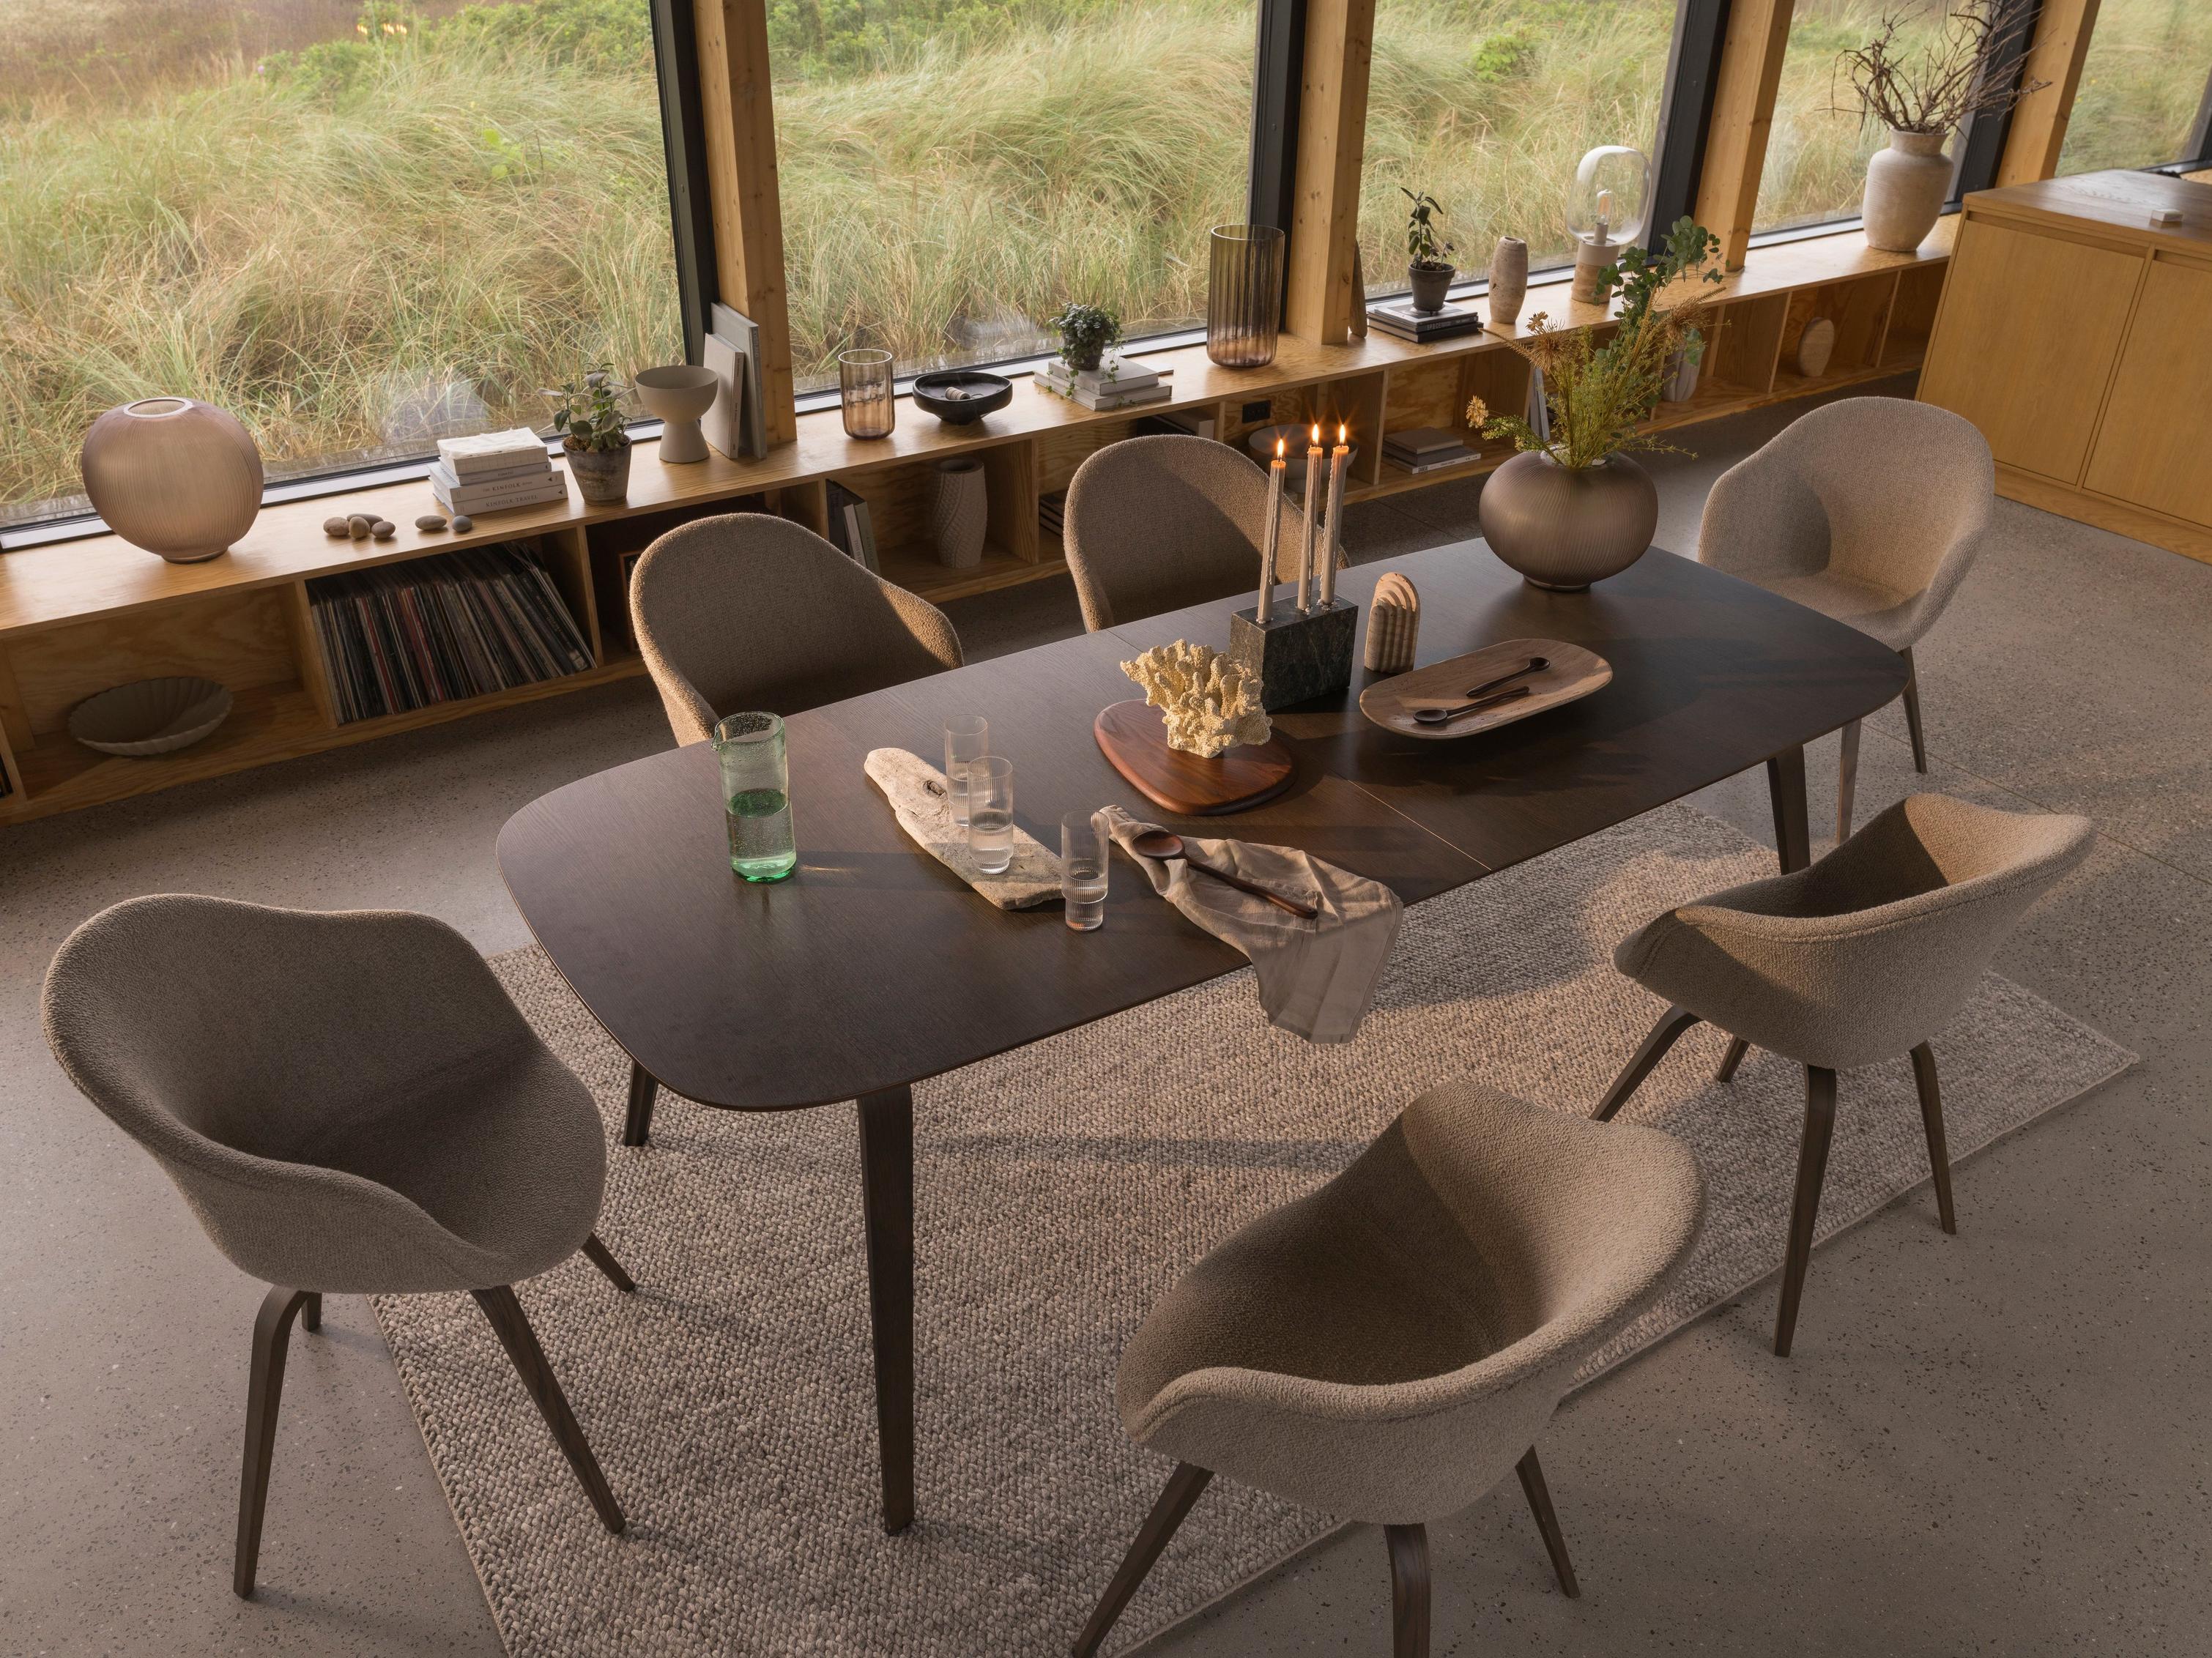 採用 Hauge 餐桌和餐椅，富有自然元素的有機用餐環境。